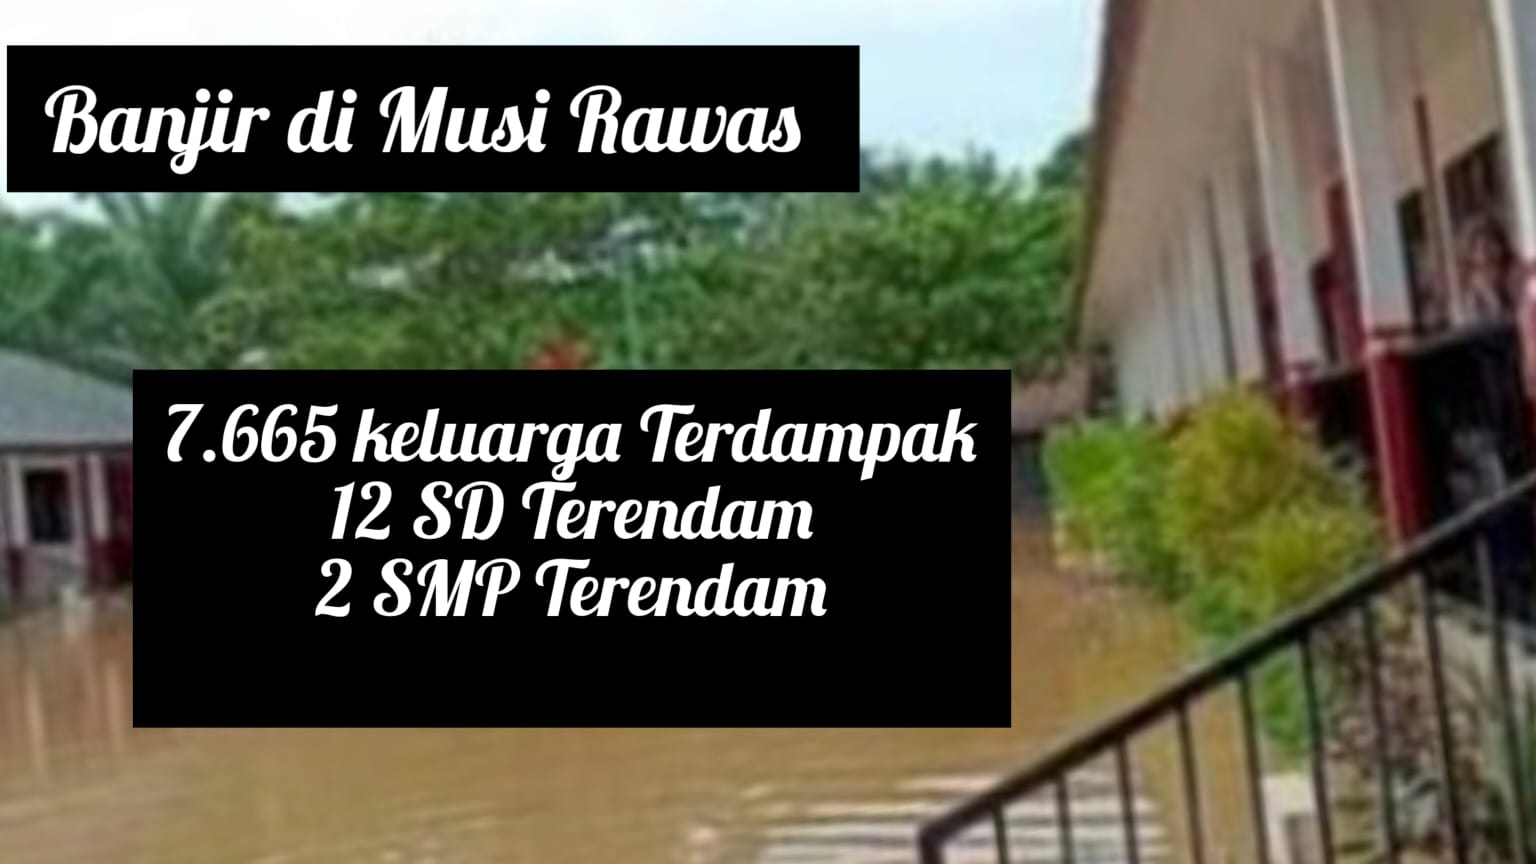 14 Sekolah di Musi Rawas Terendam Banjir, Proses Belajar Tetap Dilaksanakan 